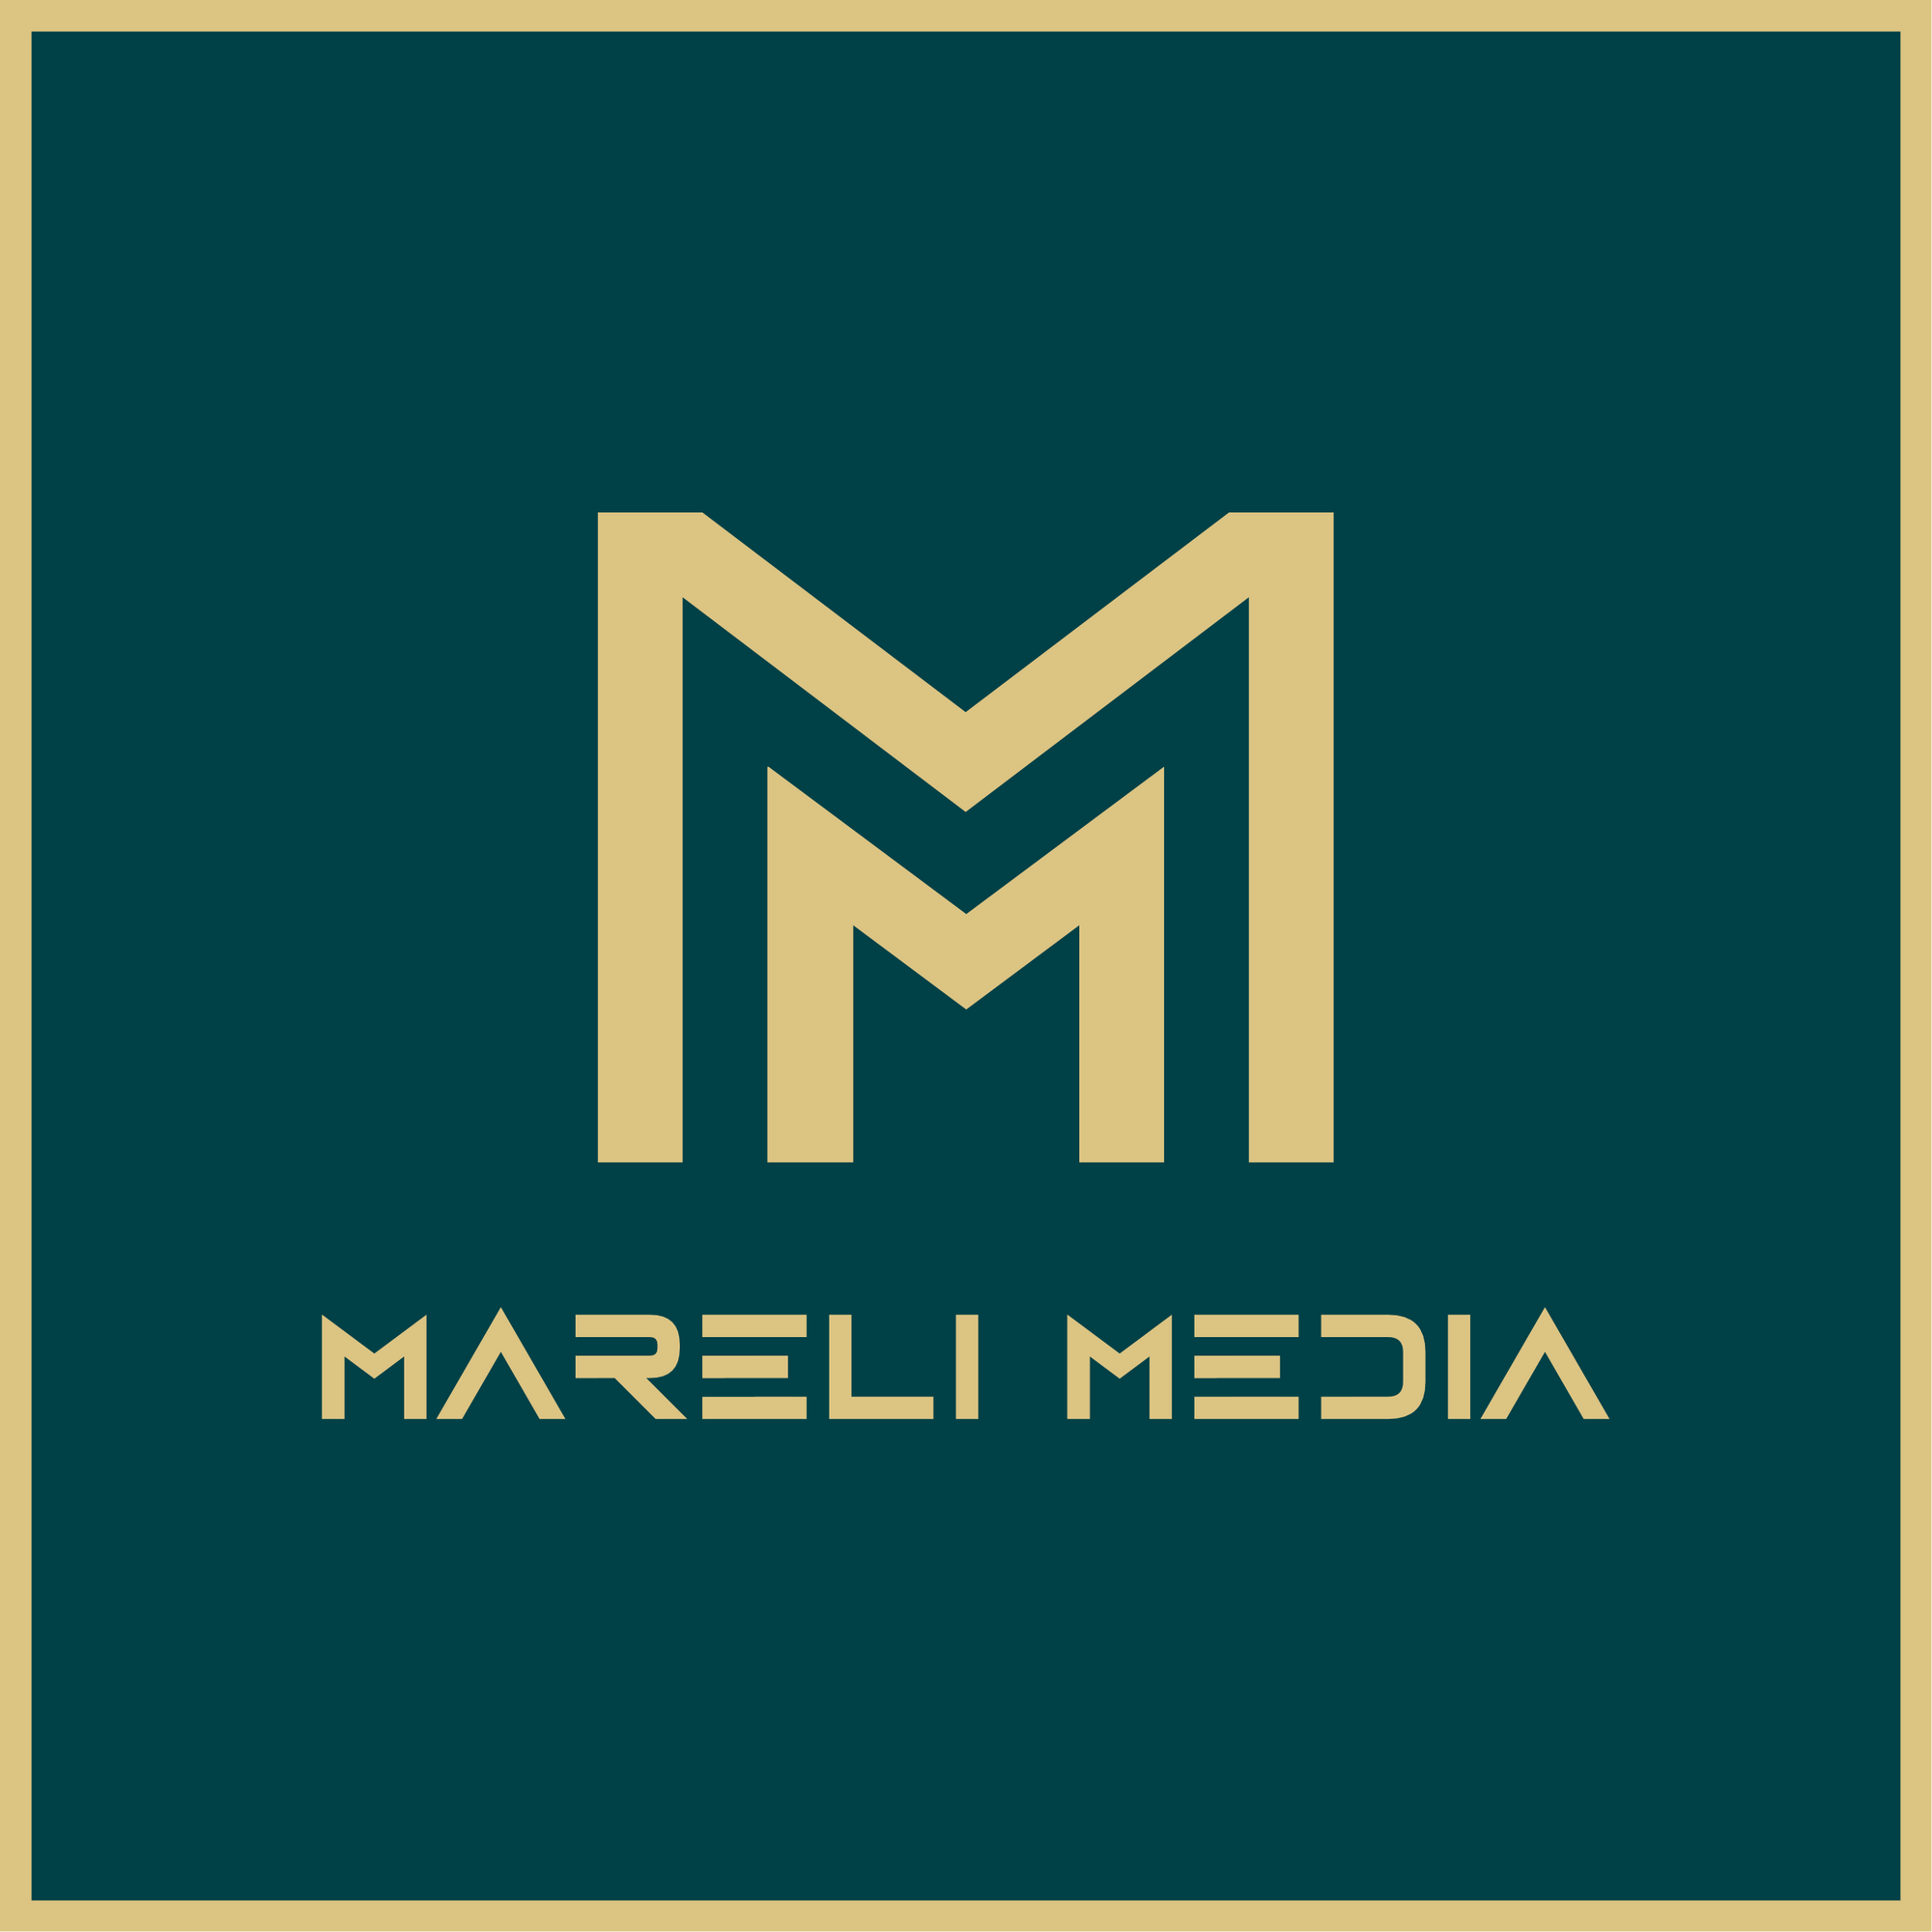 Mareli Media GmbH, Große Arche 3 in Erfurt